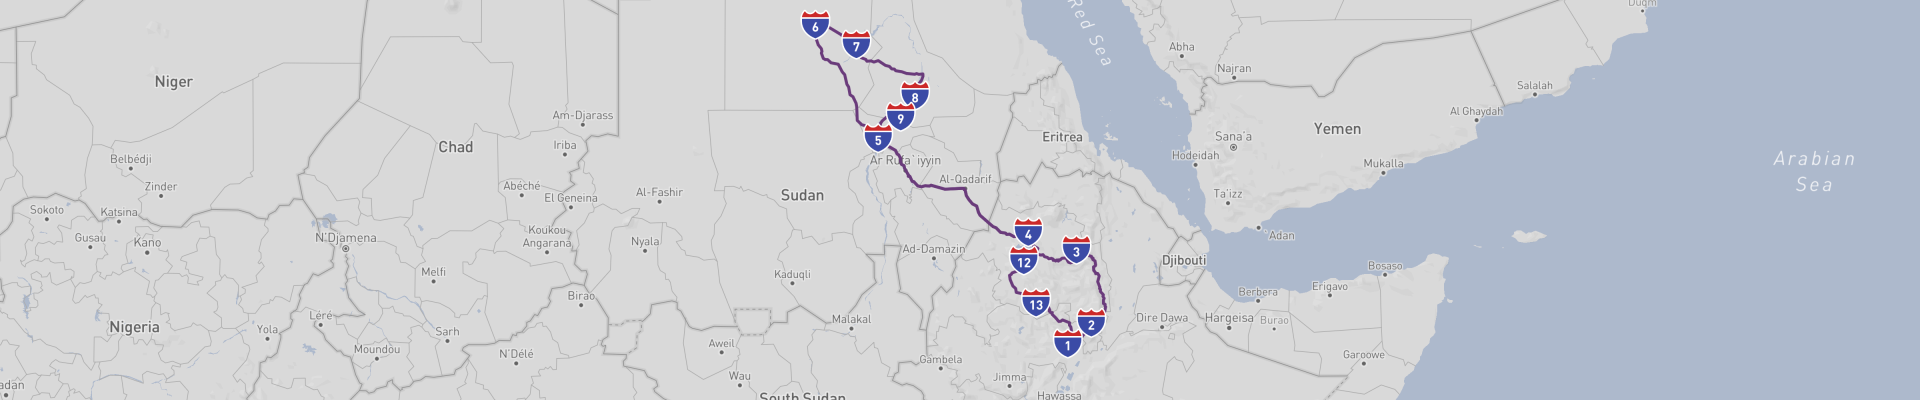 Viagem pela Etiópia e pelo Sudão